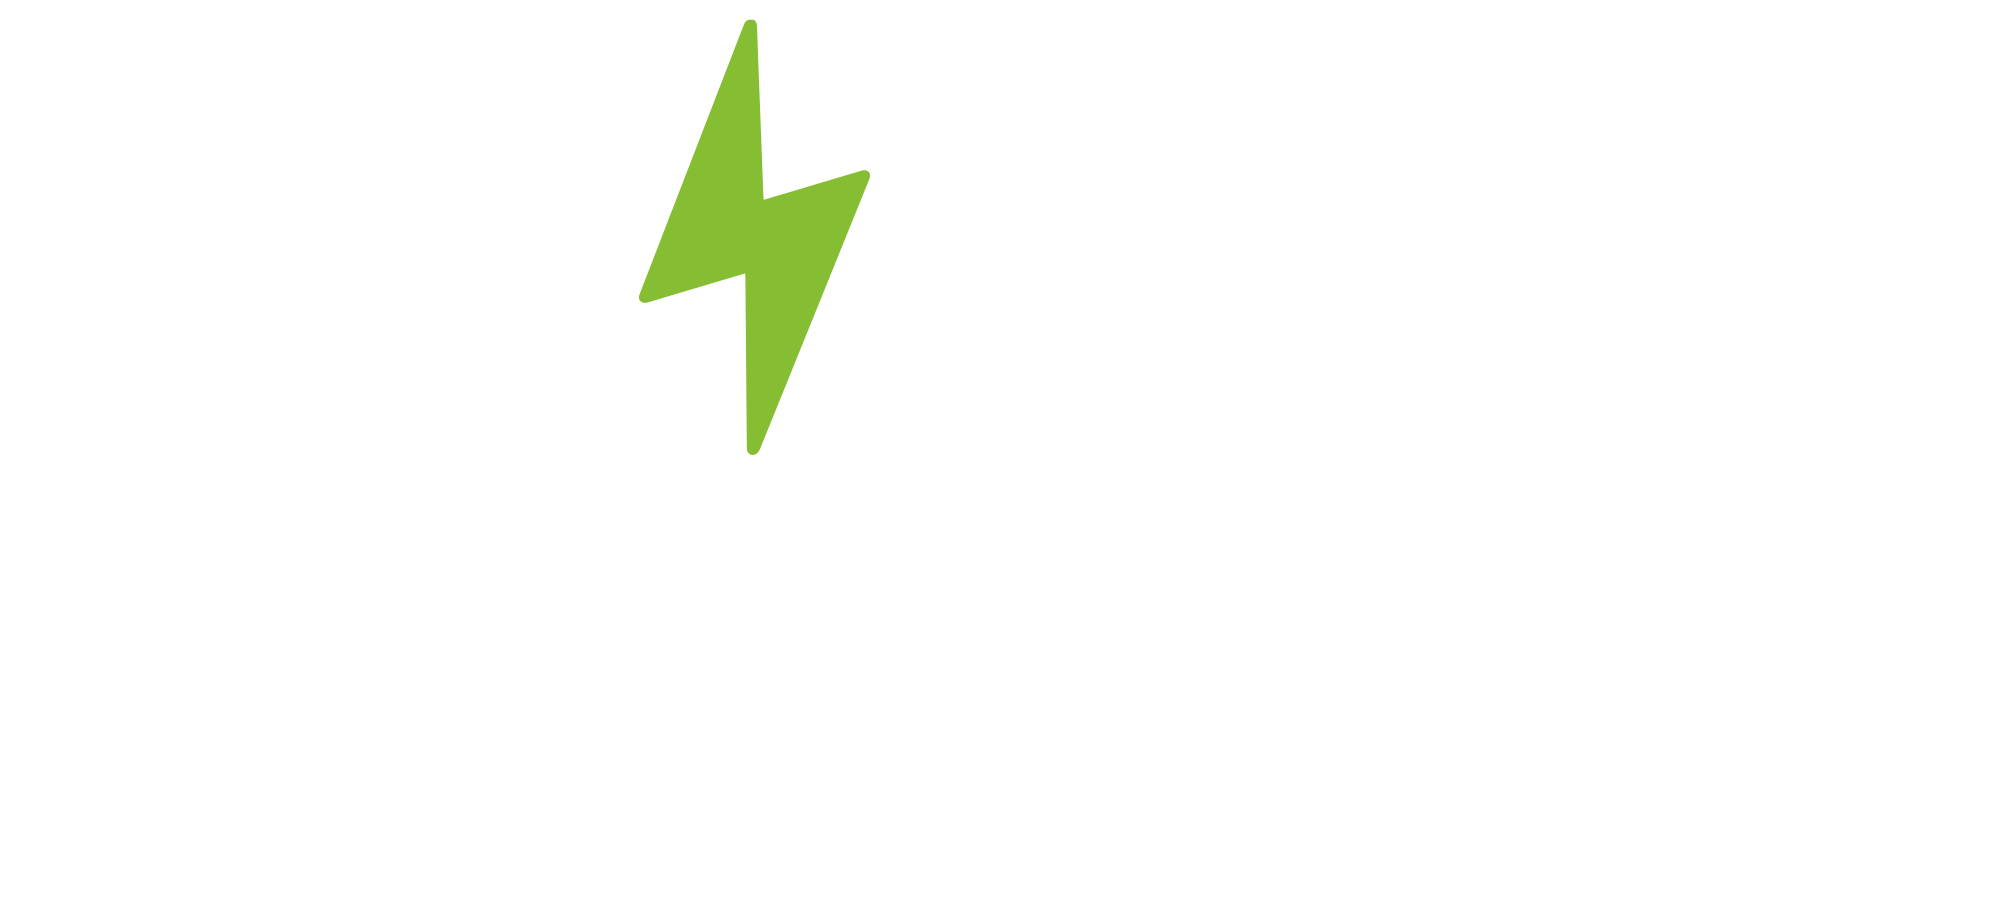 Svek Logo